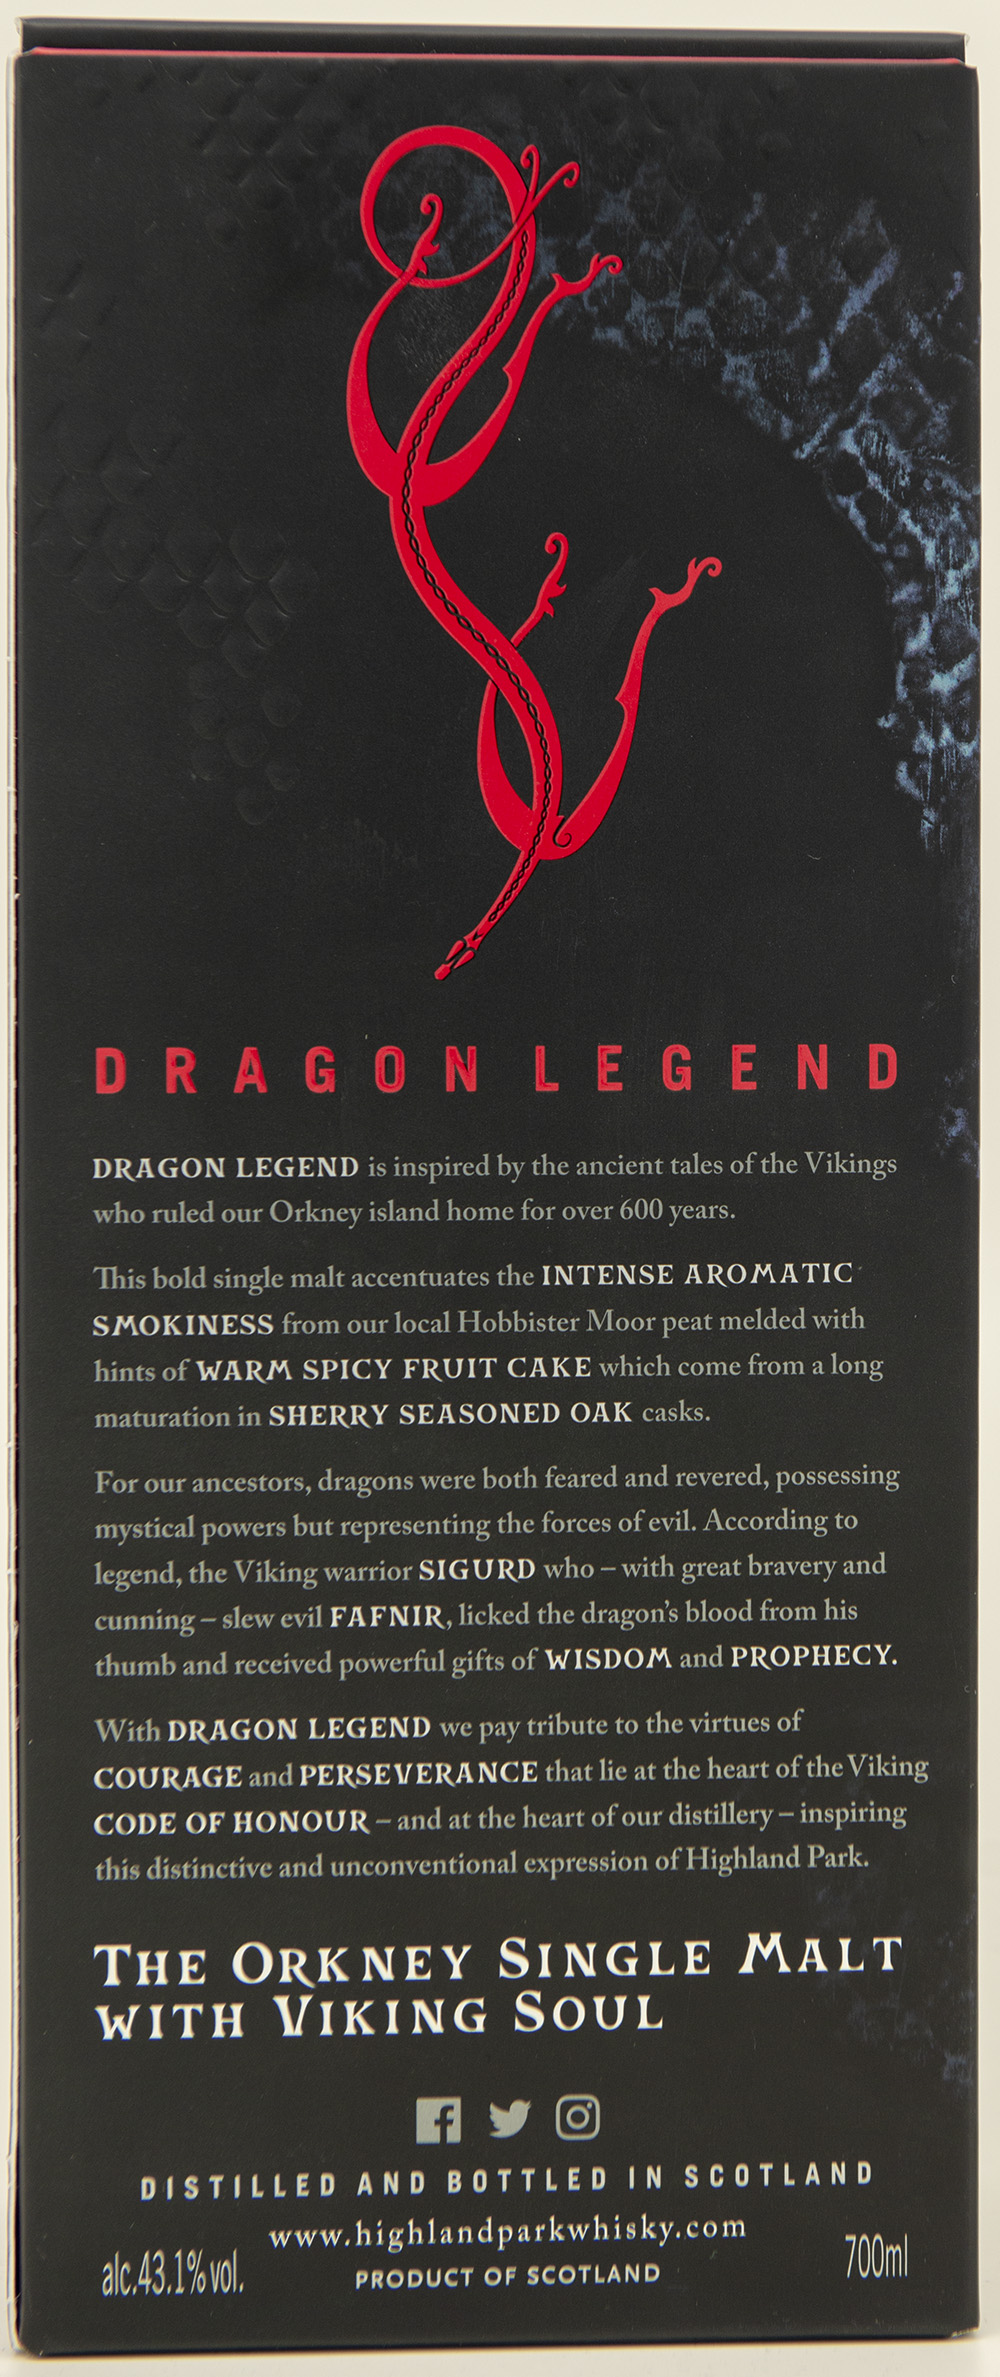 Billede: DSC_4503 - Highland Park Dragon Legend - box back.jpg